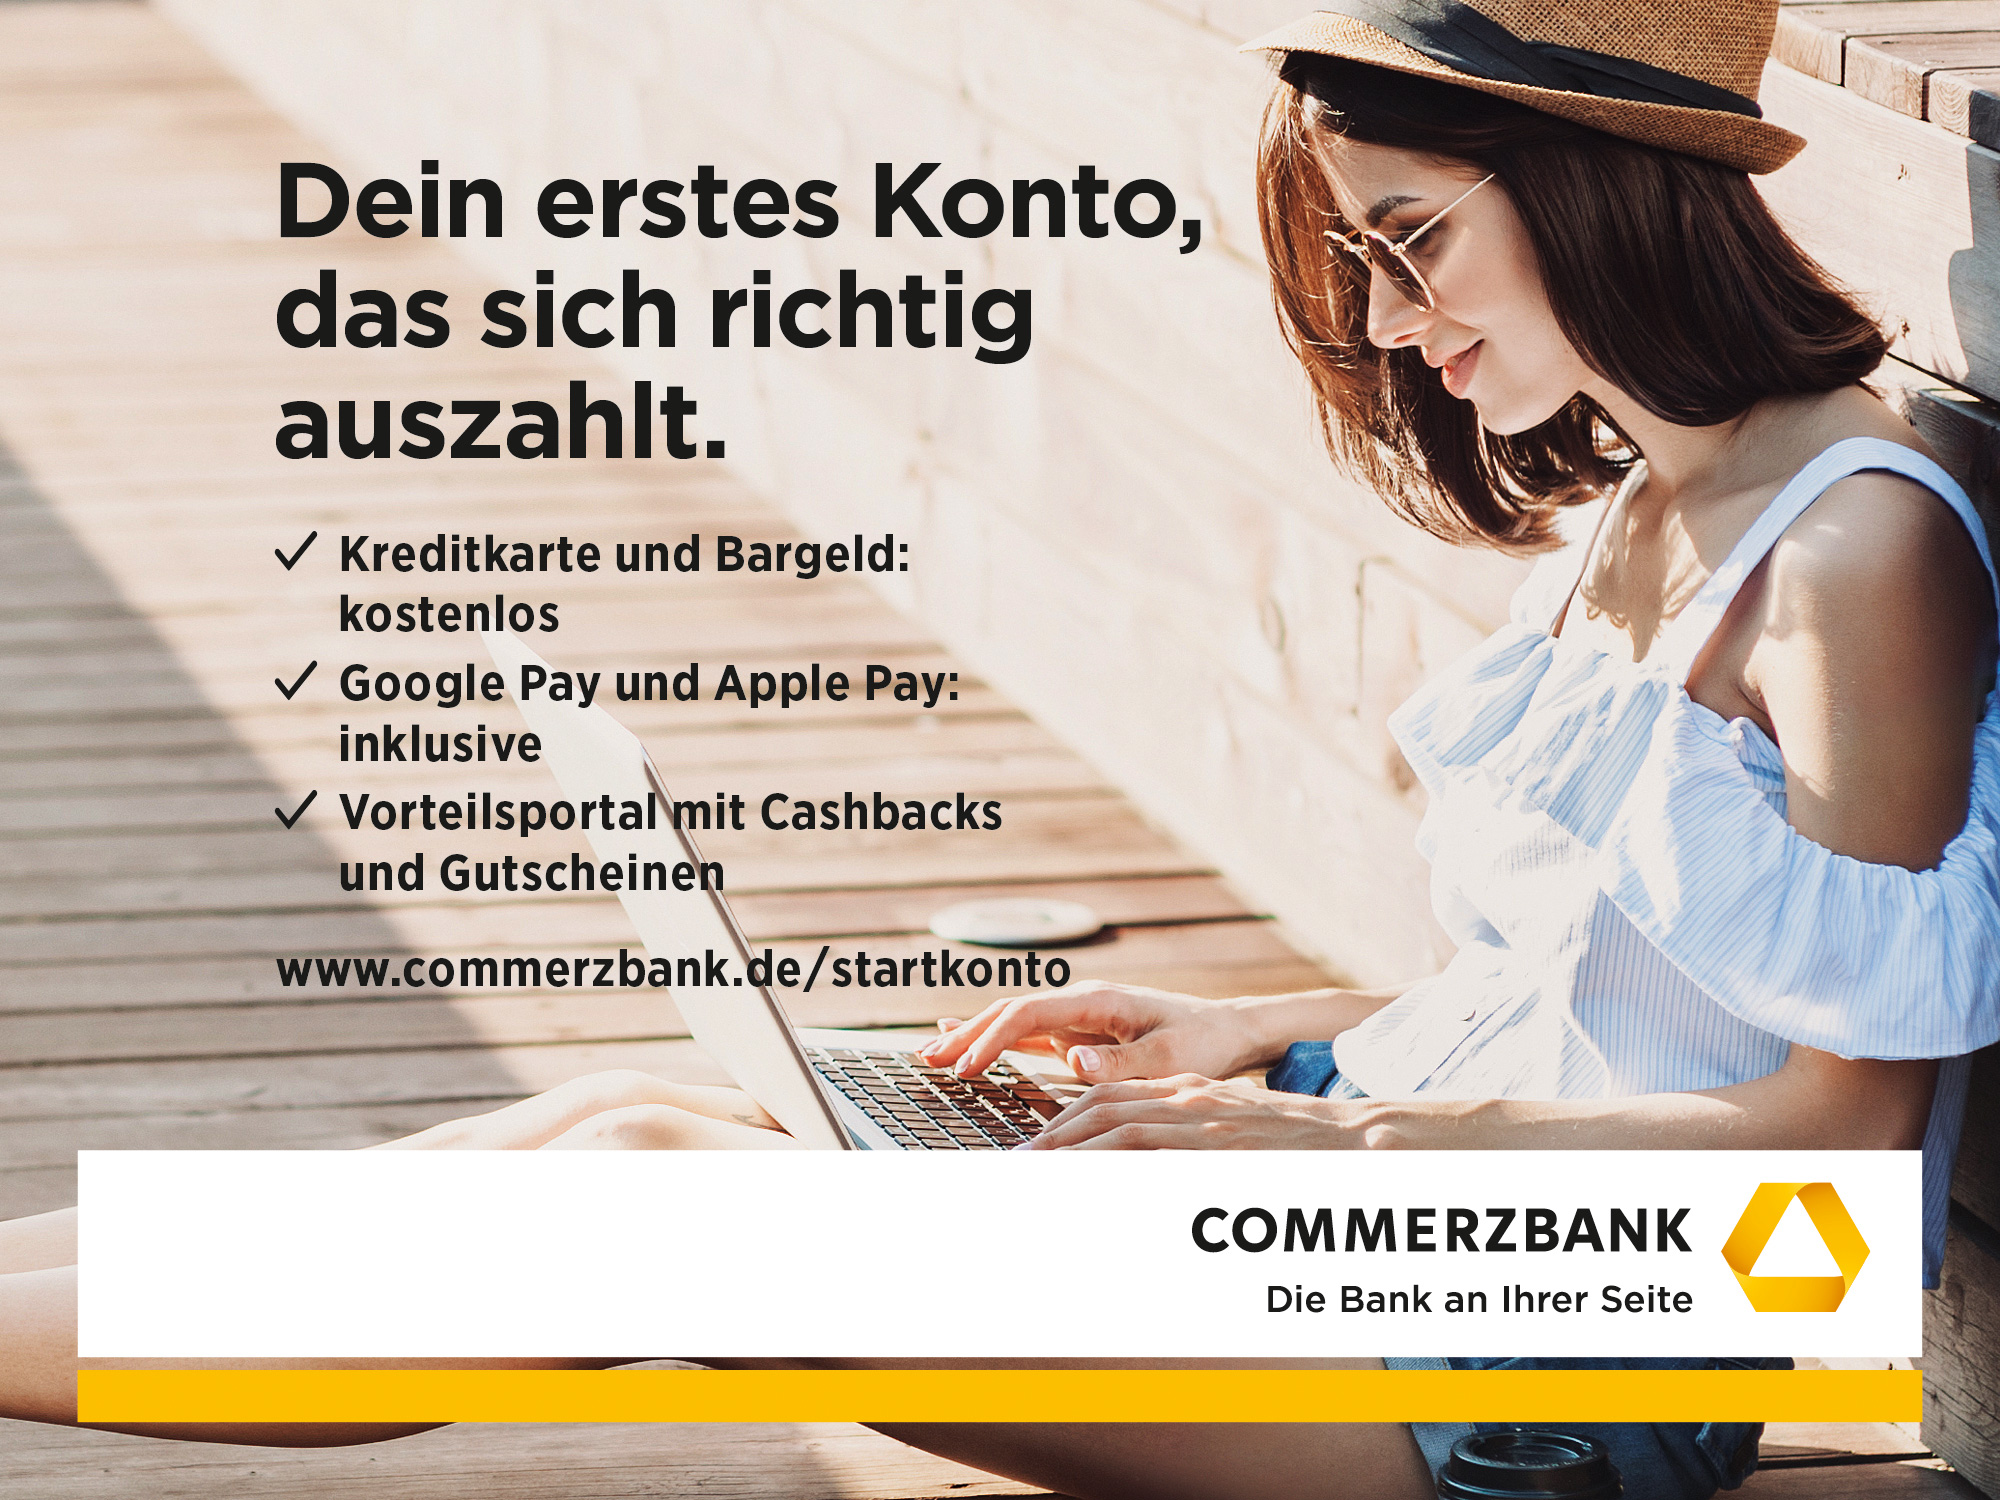 Commerzbank AG - Frau am Computer mit Informationen zum StartKonto